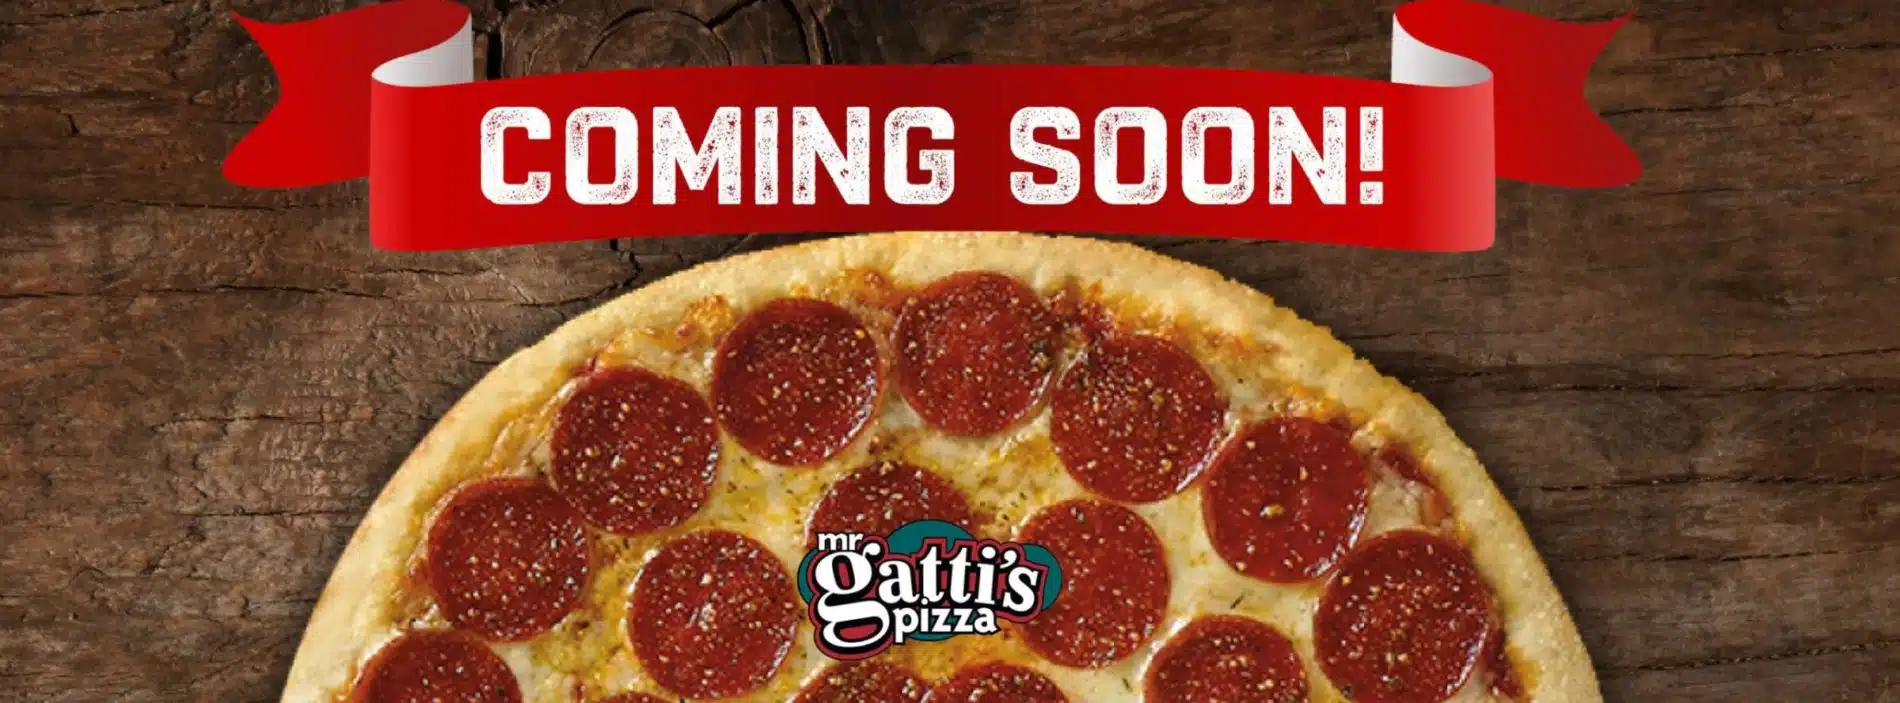 Mr Gatti's Pizza Mr Gatti's Pizza Coming Soon Banner